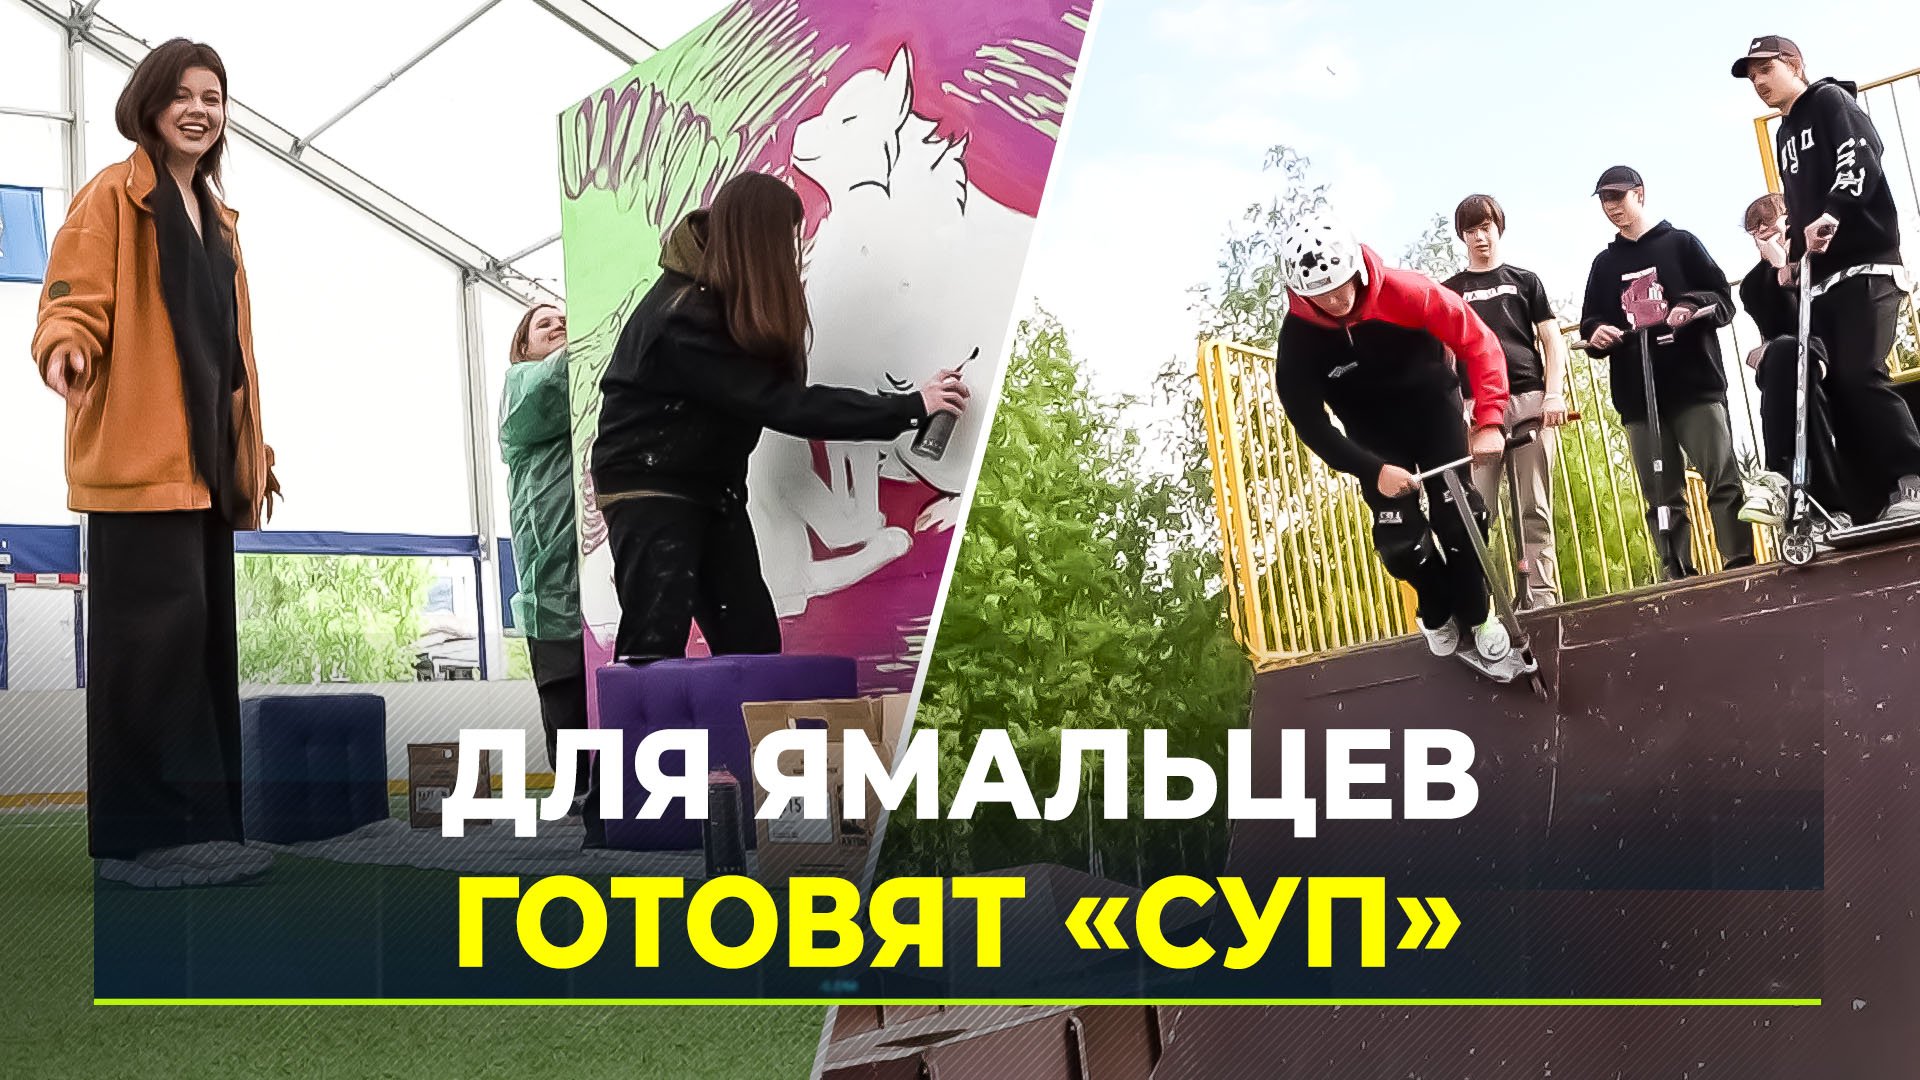 Летом на Ямале пройдет фестиваль субкультур «СУП»